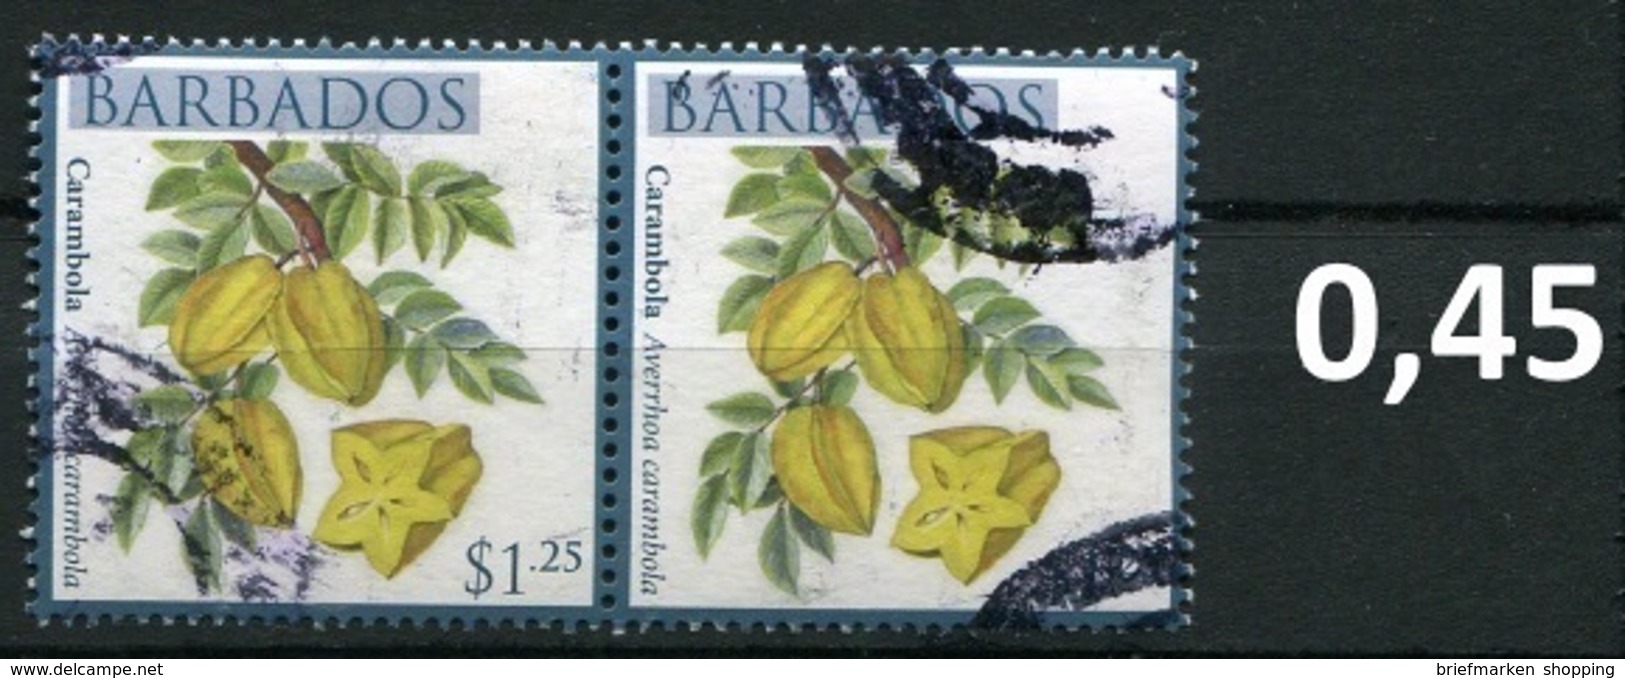 Barbados - Früchte / Fruits 2011 - 1,25 $ Im Paar / Pair - Oo Oblit. Used Gebruikt - Barbados (1966-...)